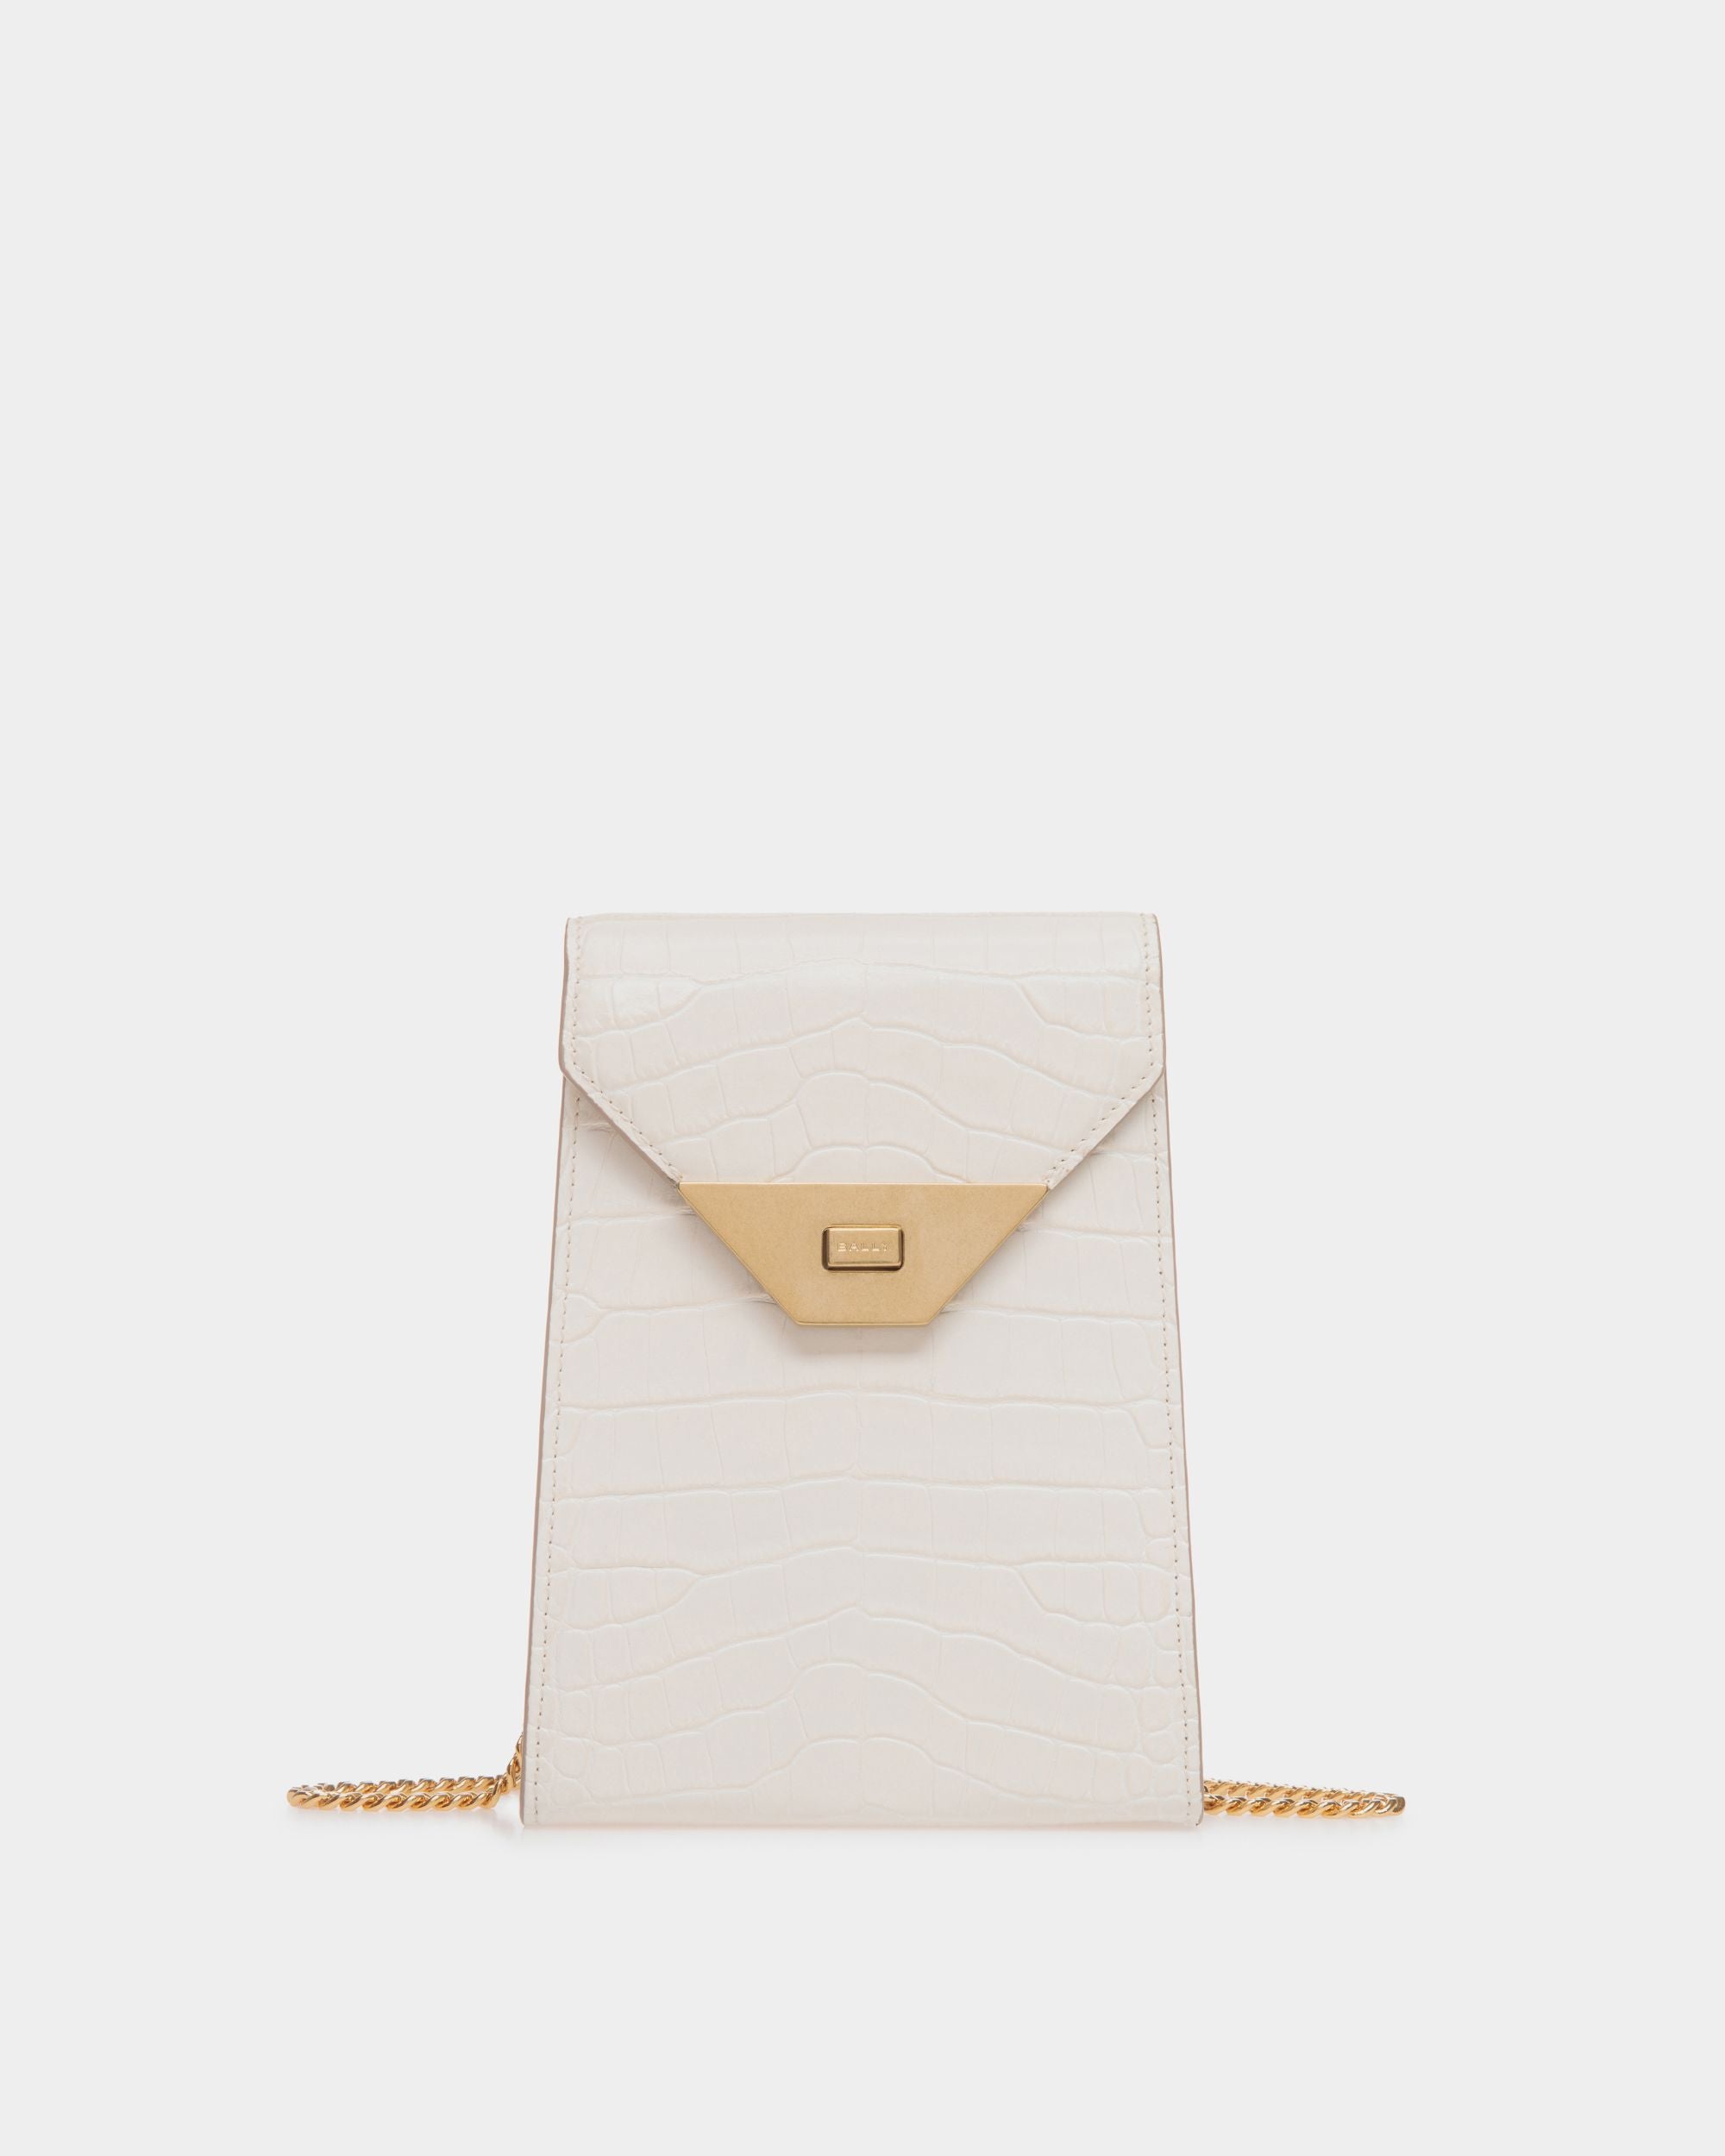 Tilt | Smartphone-Tasche für Damen aus weißem Leder mit Kroko-Print | Bally | Still Life Vorderseite